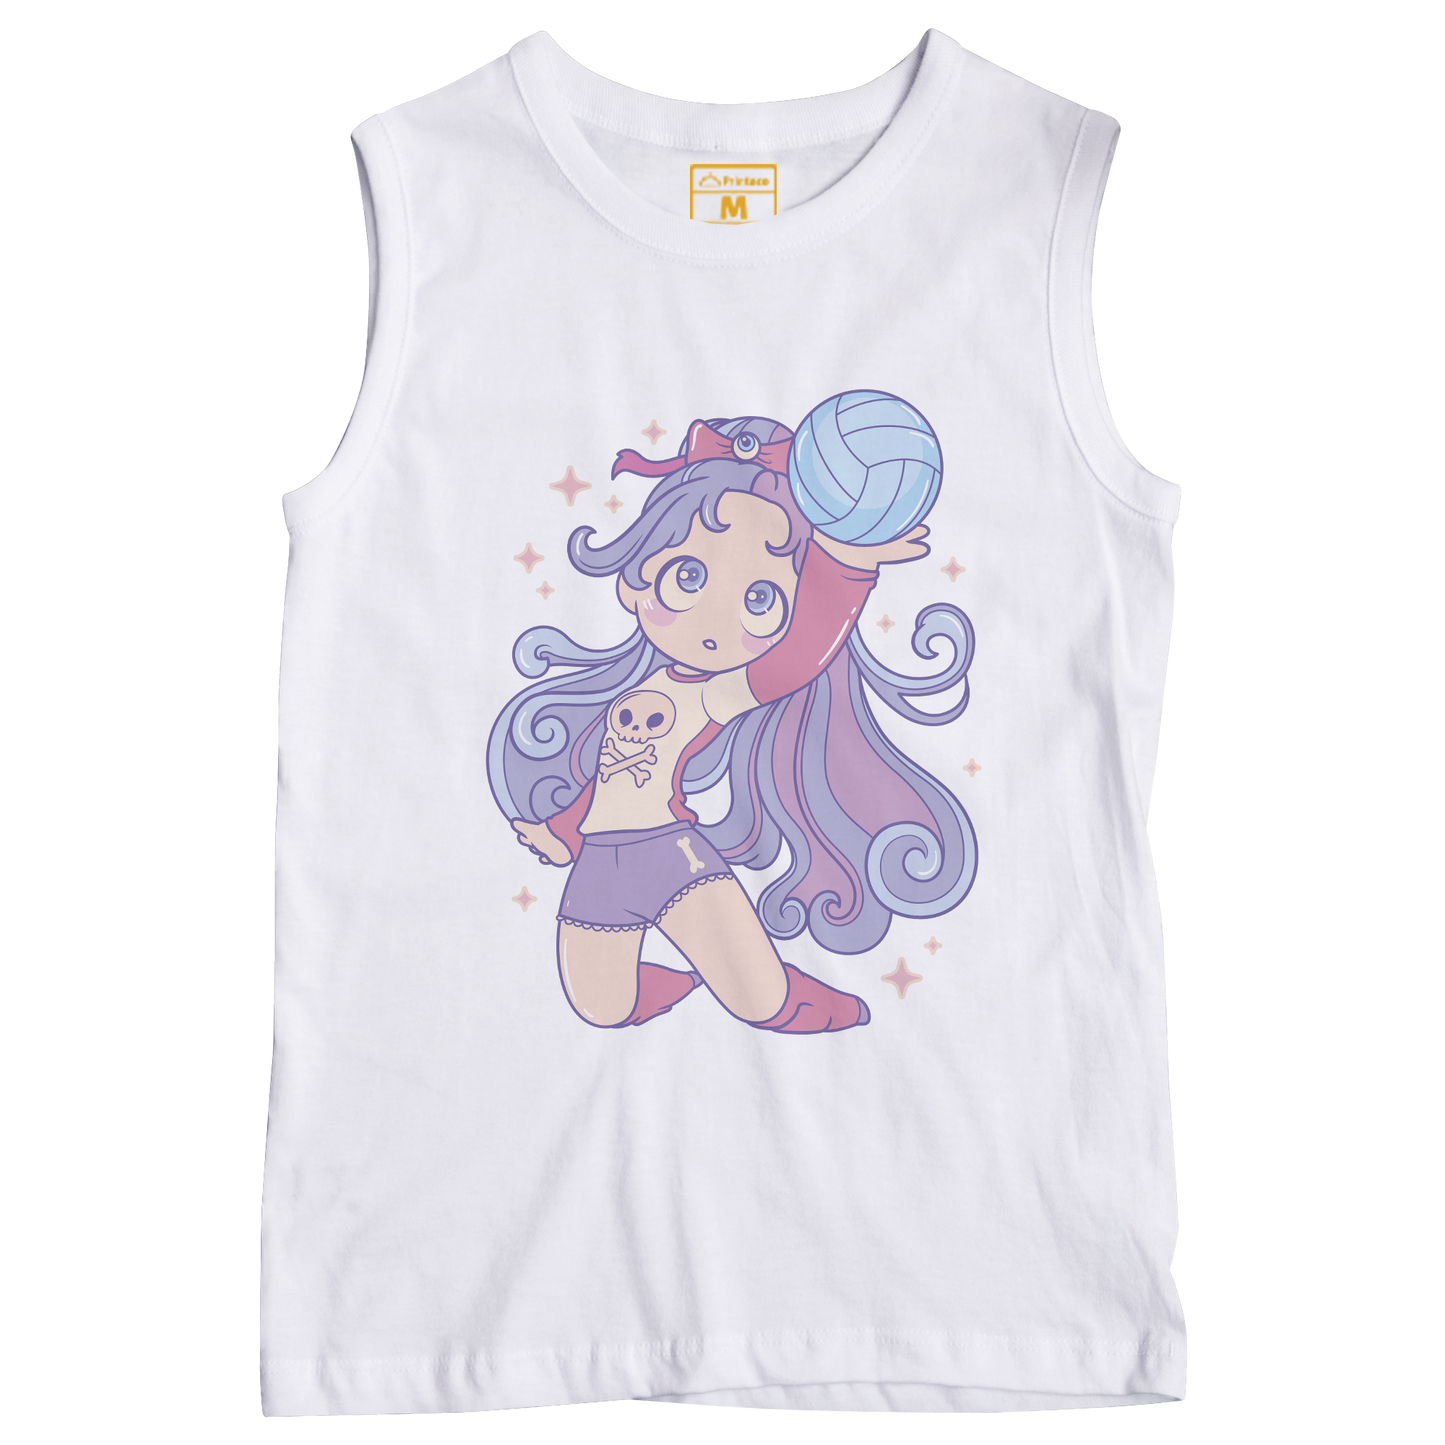 Sleeveless Drifit Shirt: Cute Girl Volleyball